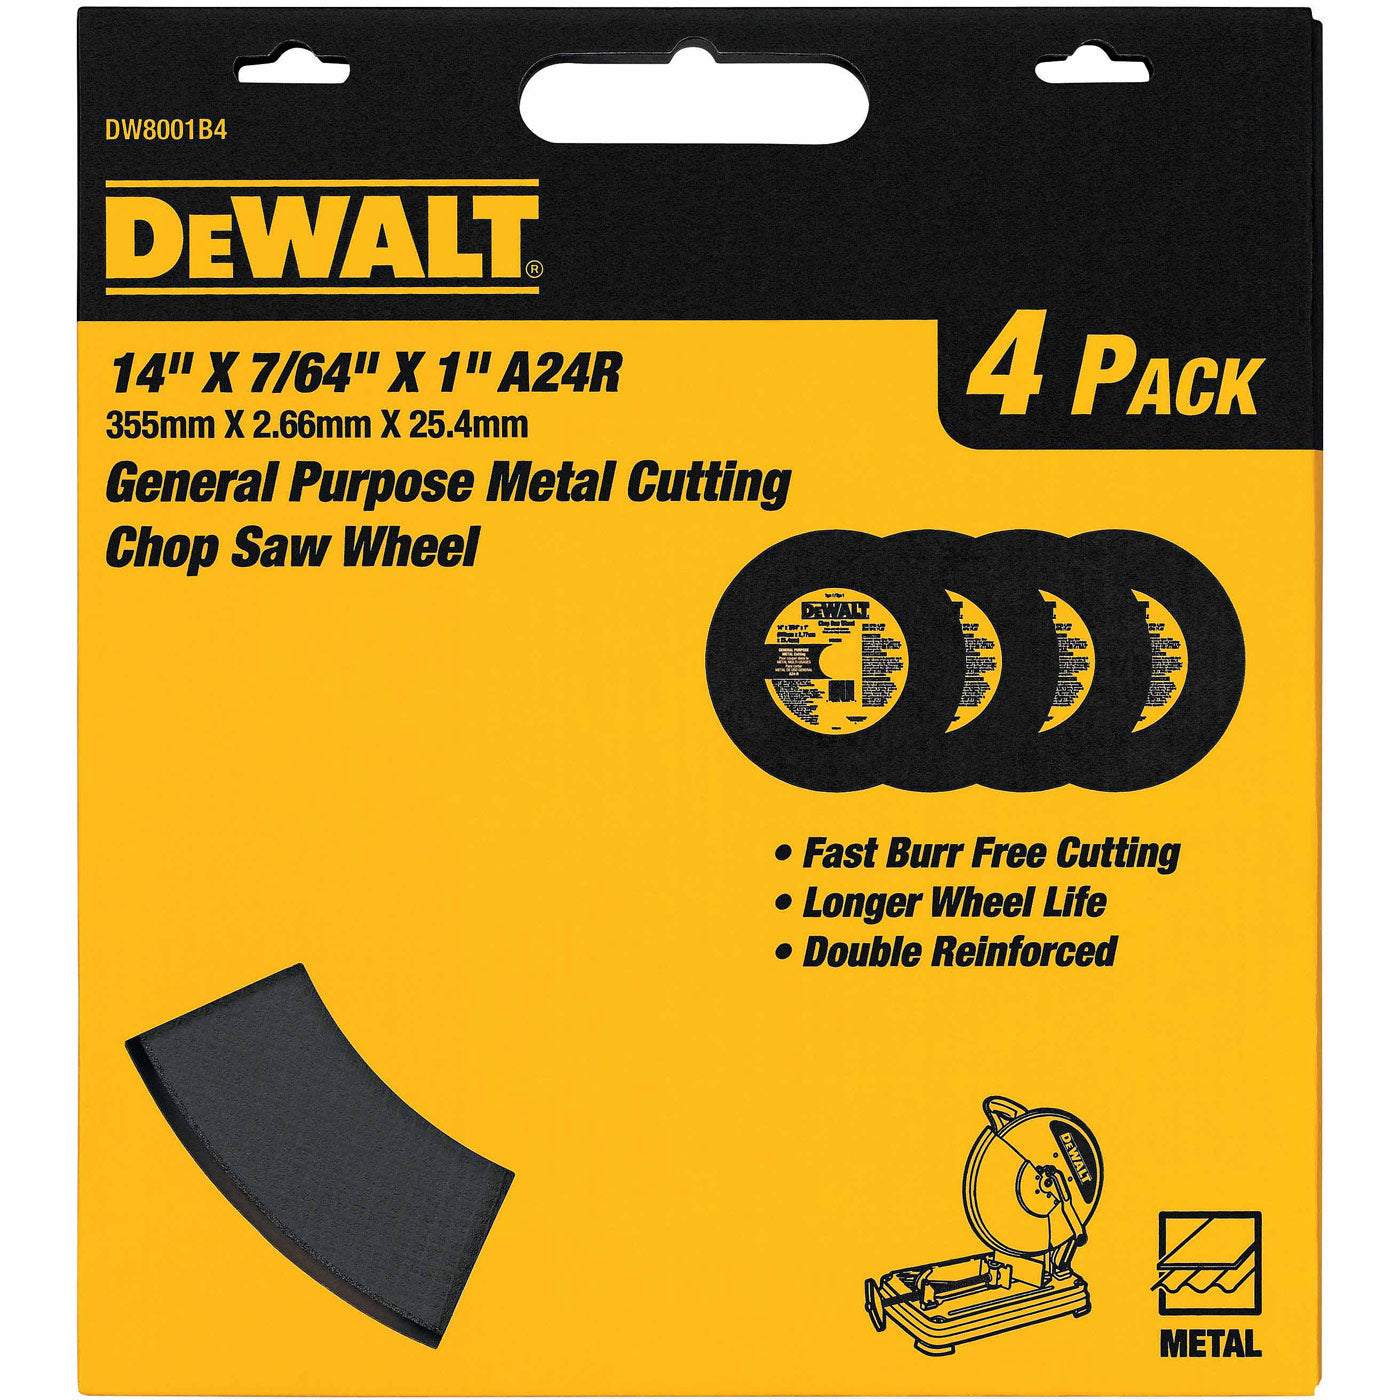 DeWalt DW8001B4 14"X7/64"X7/64"X1" GP Chop Saw Wheel, 4 Pack